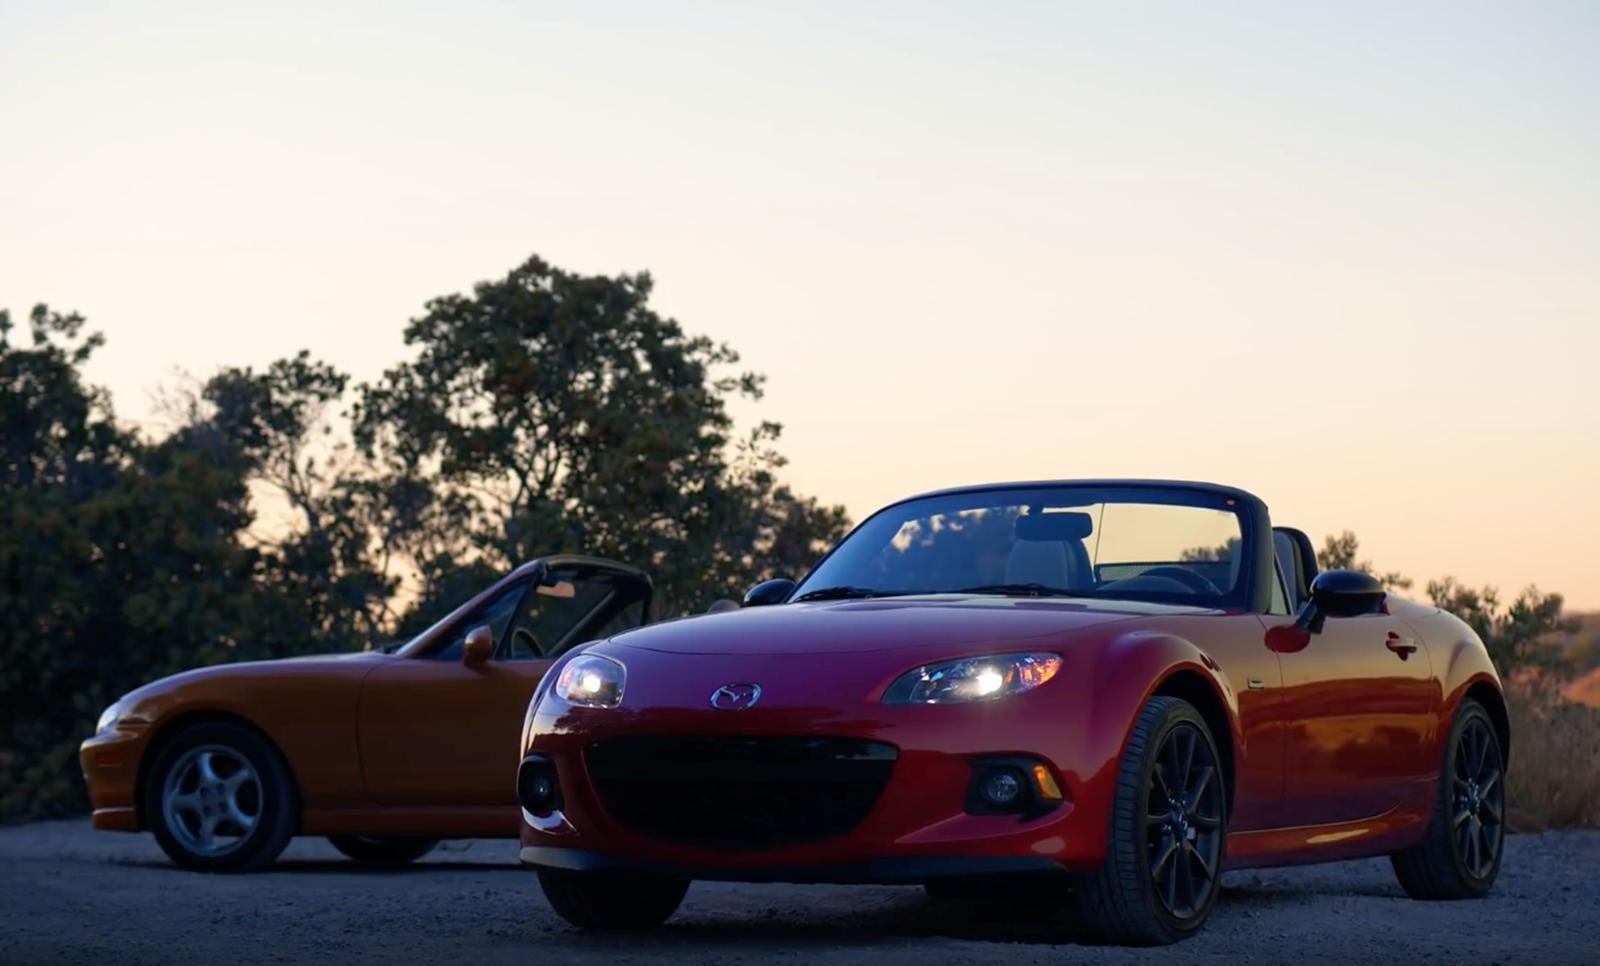 Он сделан в честь 30-летия маленького спортивного автомобиля и начинается с коллекции наследия Mazda, хранящейся в его научно-исследовательском центре в Калифорнии. Остальные видео будут посвящены каждому из четырех поколений автомобиля, включая проп